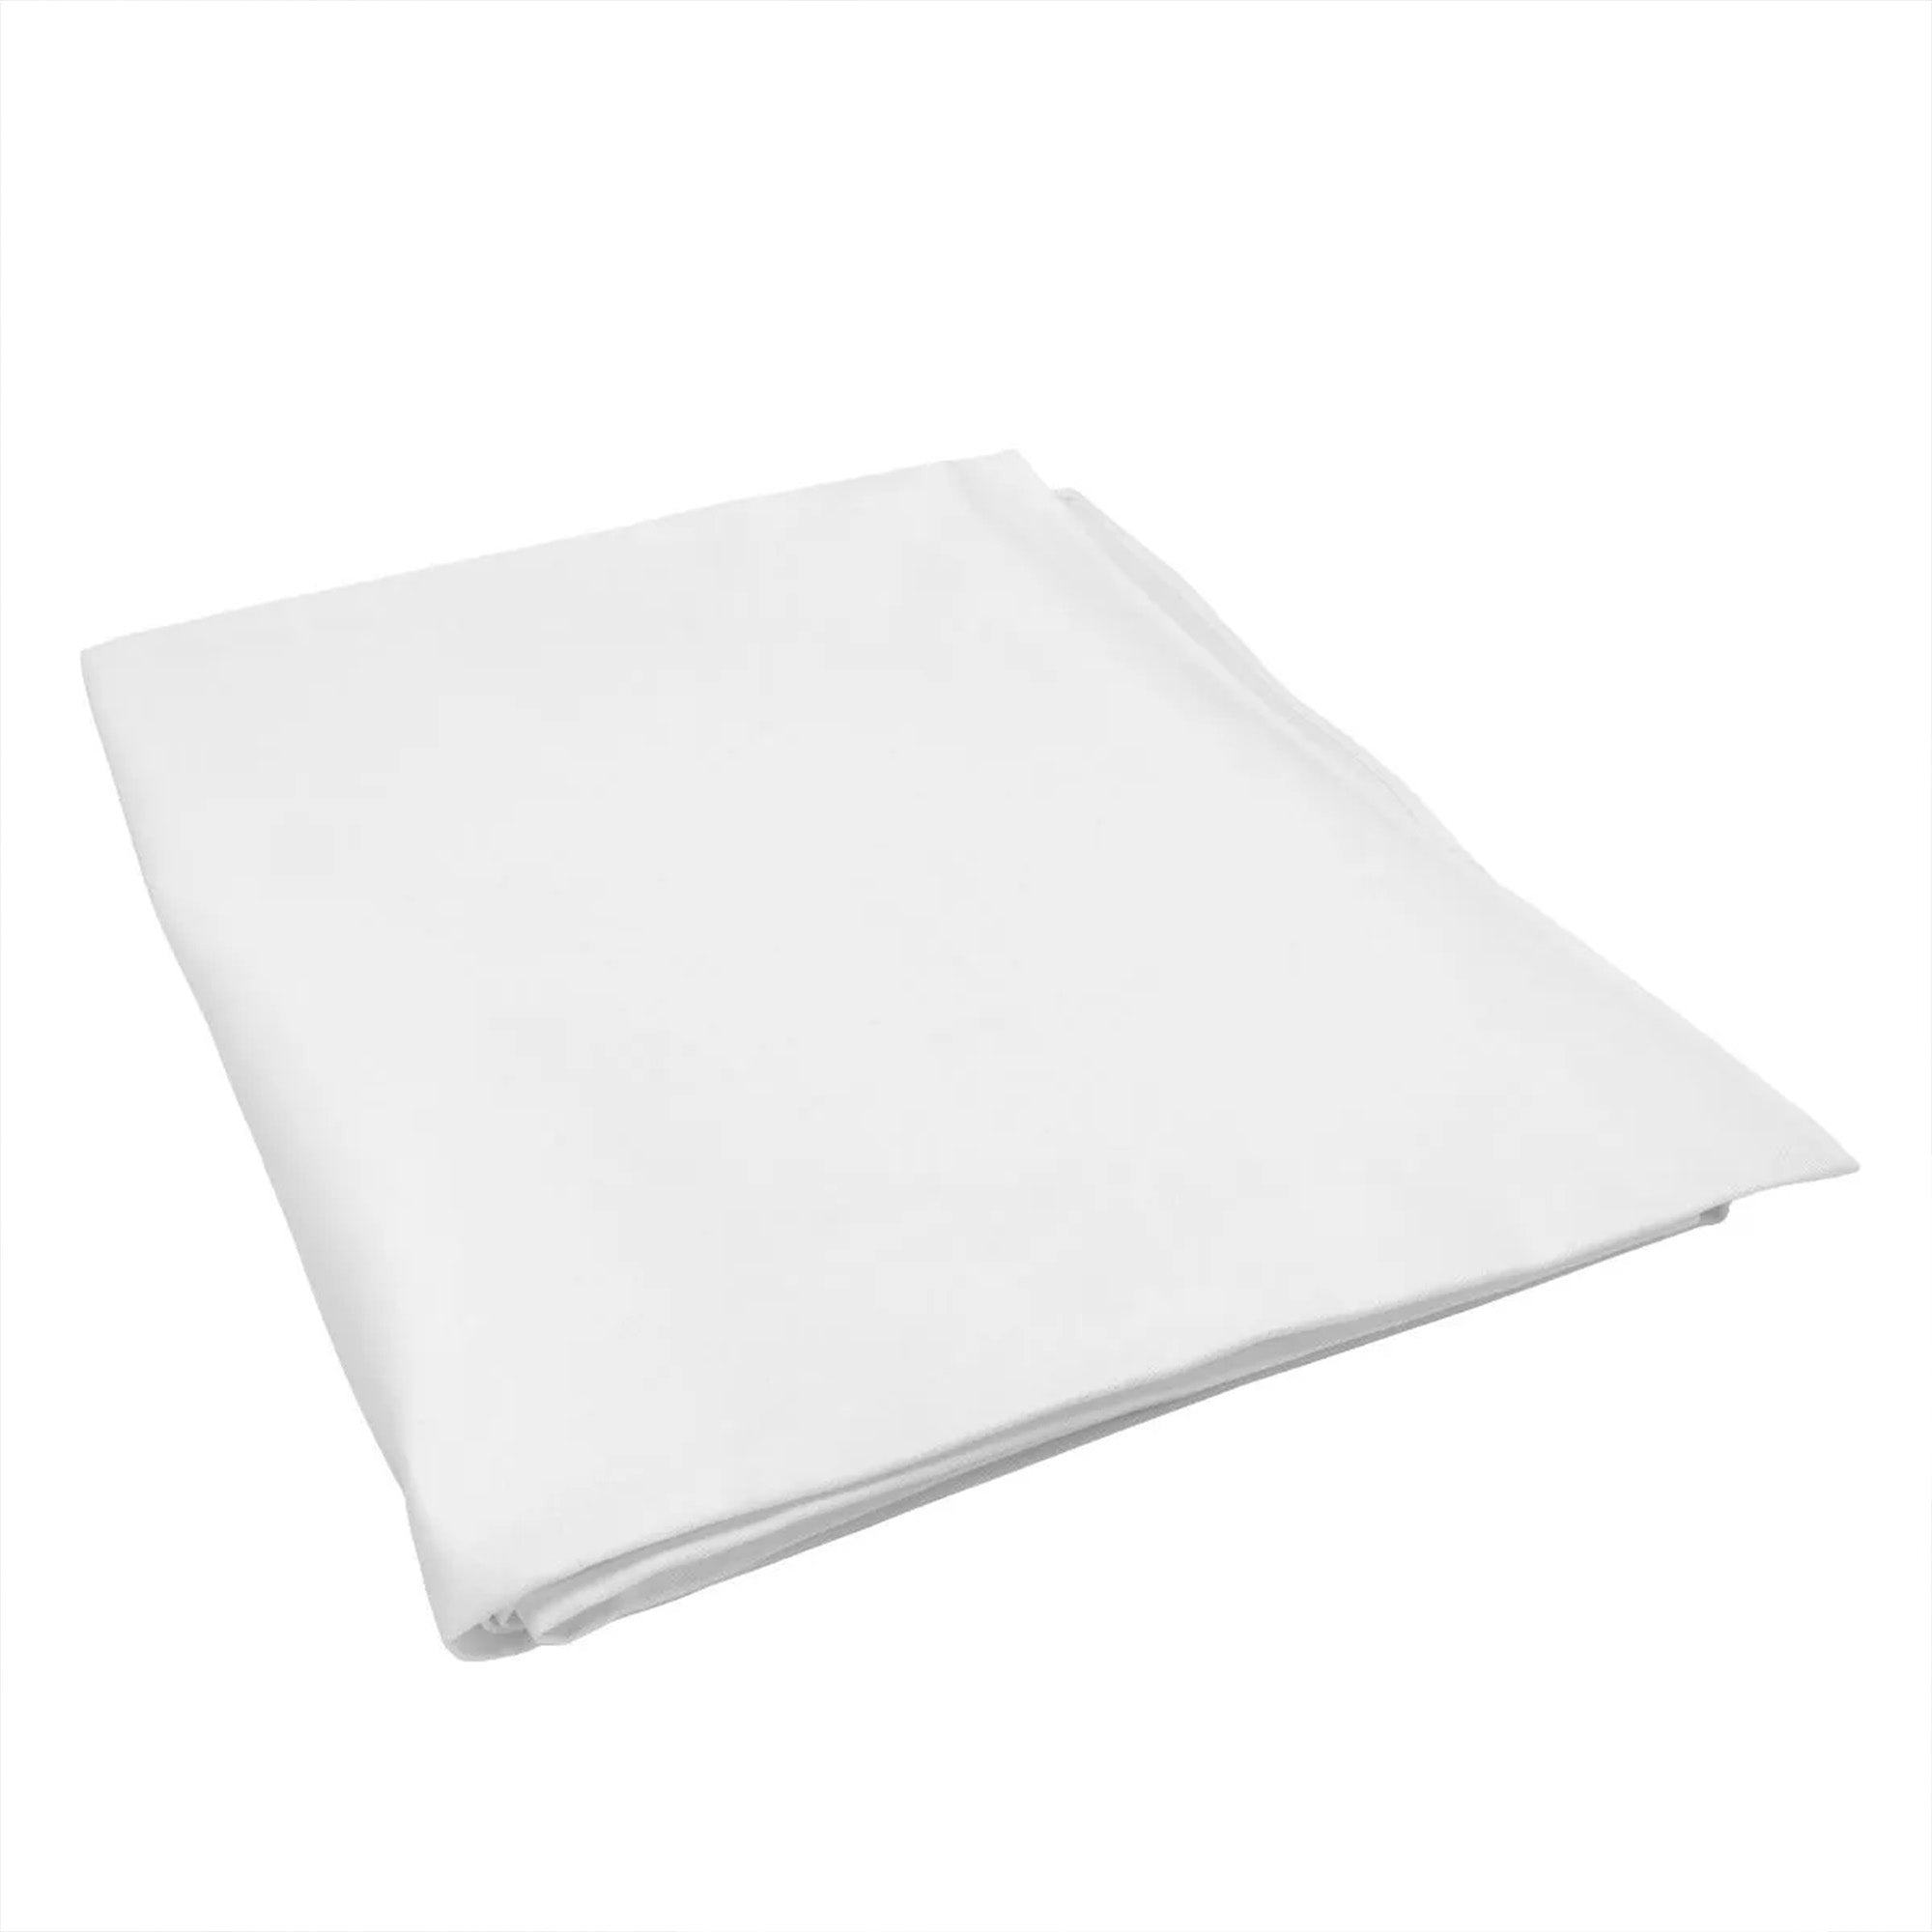 (30 Stykker) Damast Bordduk Porto - glatt sateng - 130 x 170 cm - Hvit